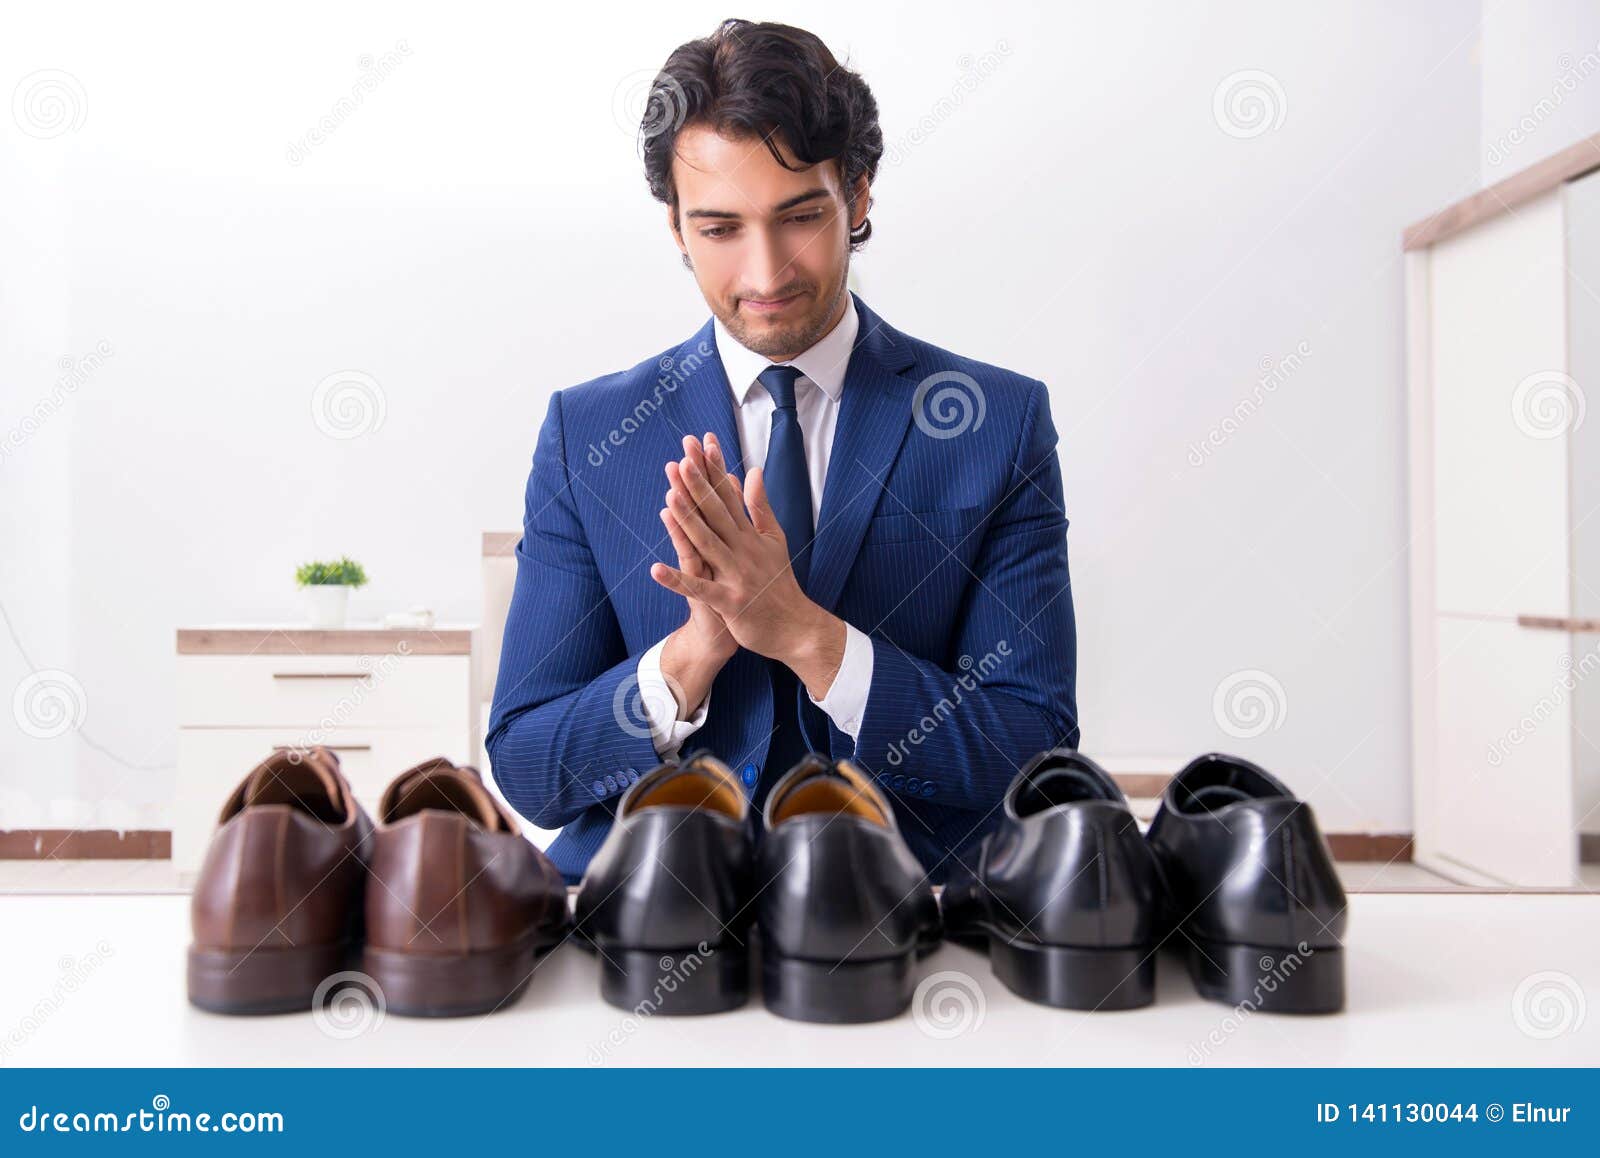 Мужчина выбирает обувь. Люди в обуви. Переодевает обувь. Мужчина с обувью в руках. Обувной для мужчин.